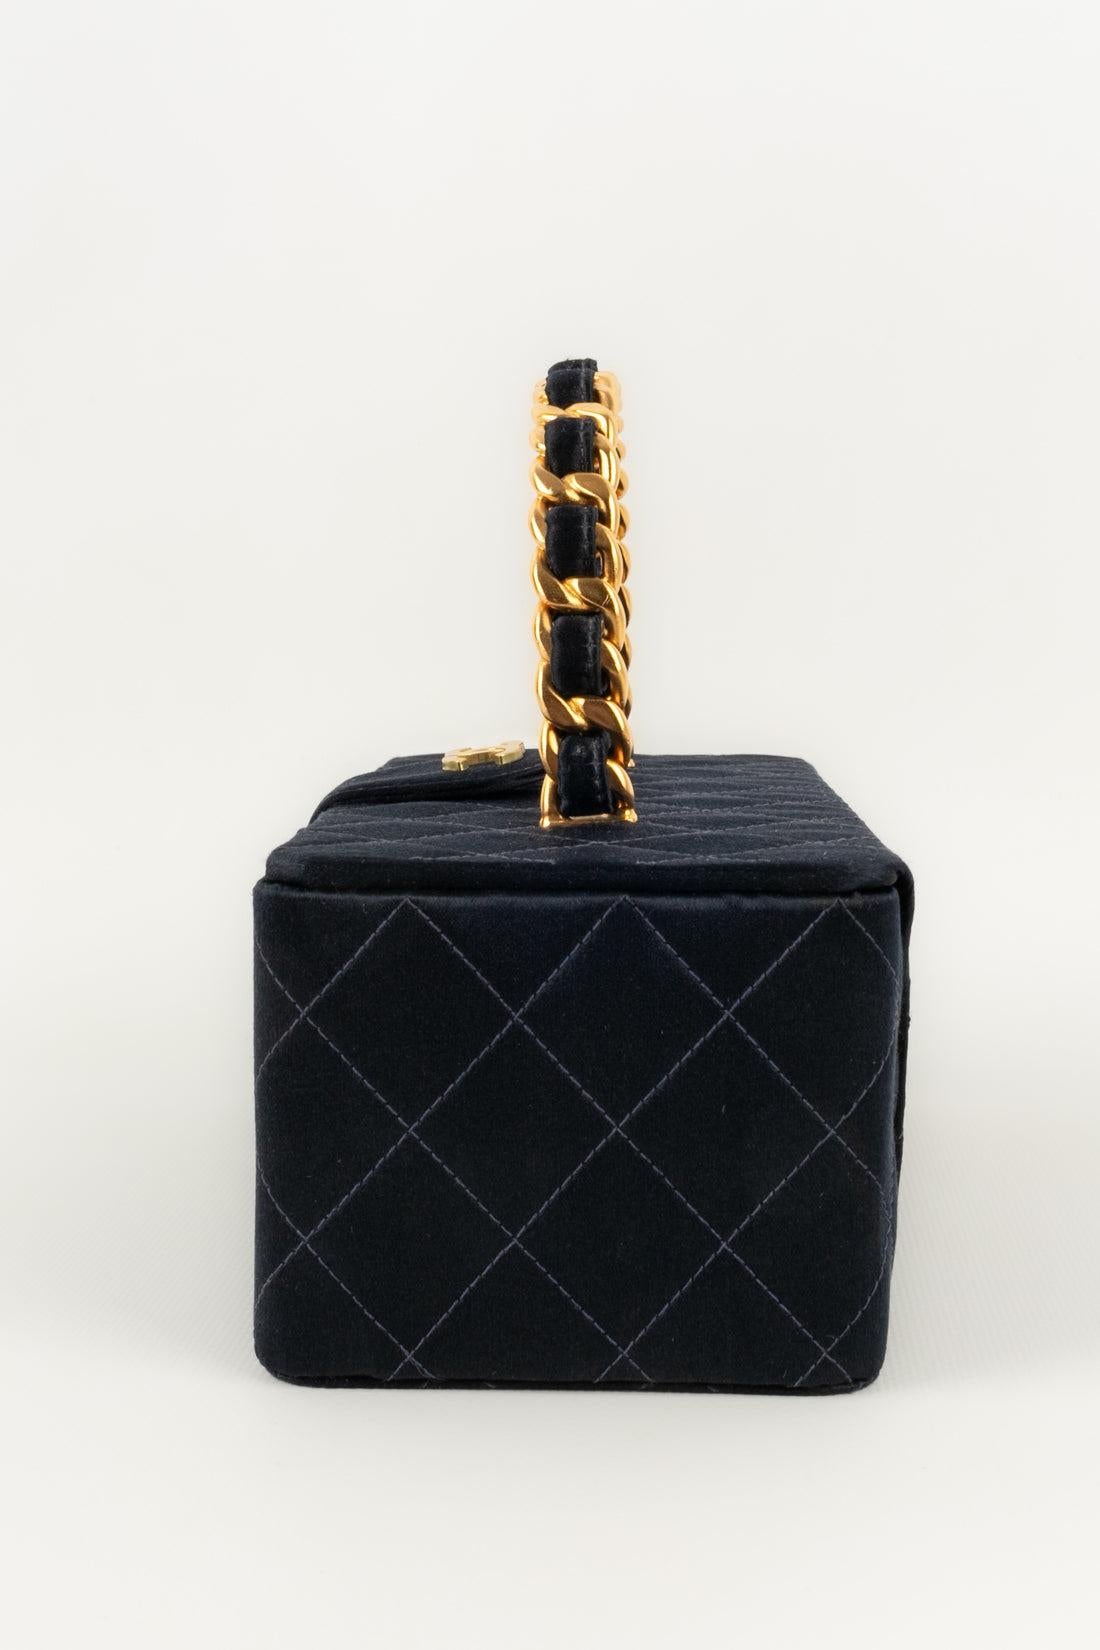  Sac Chanel en satin de soie matelassé avec éléments métalliques dorés, 1994/1996 Pour femmes 